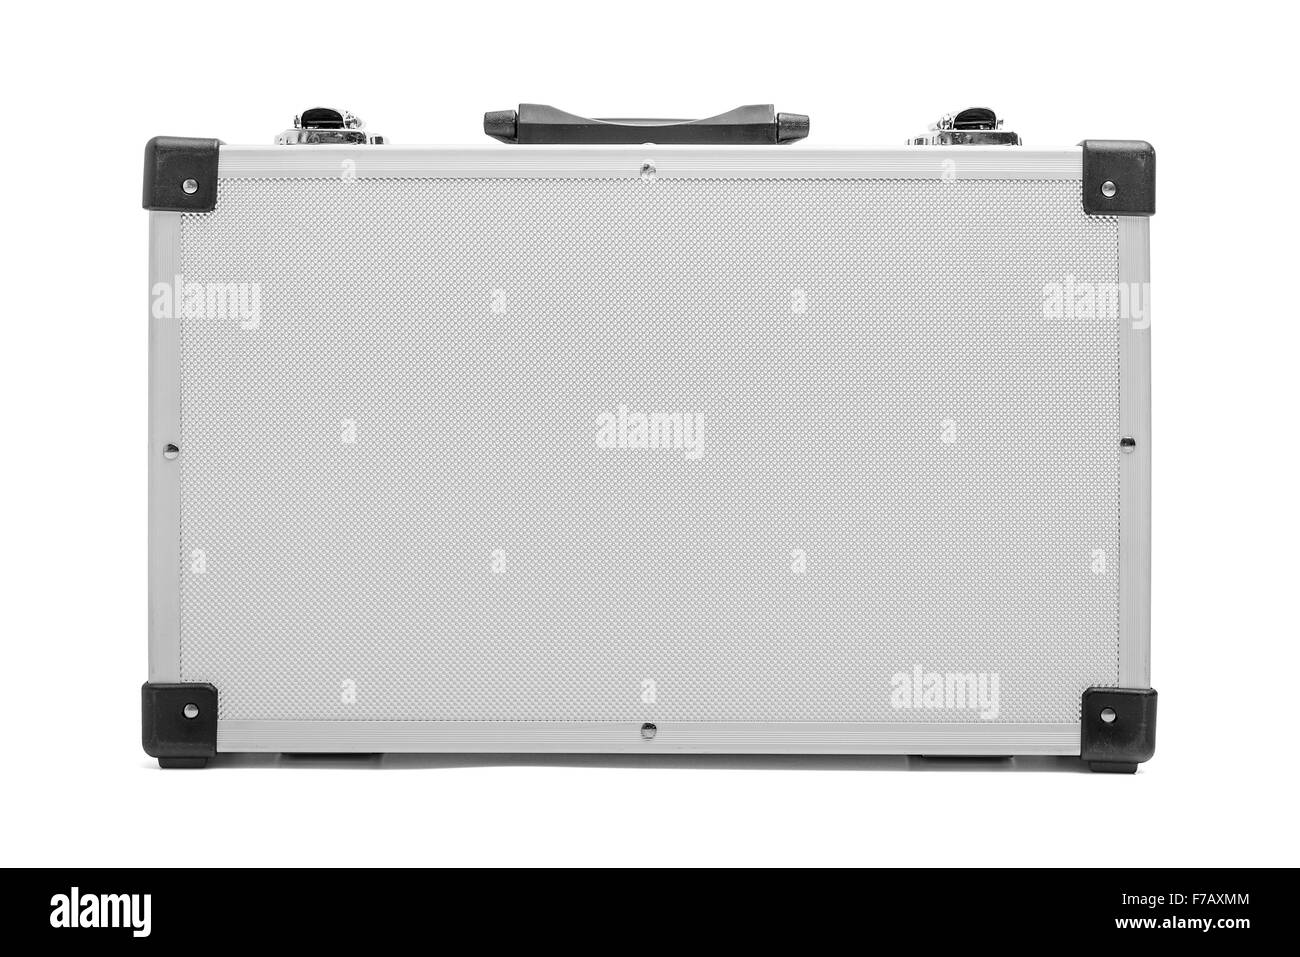 Aluminum suitcase isolated. Stock Photo